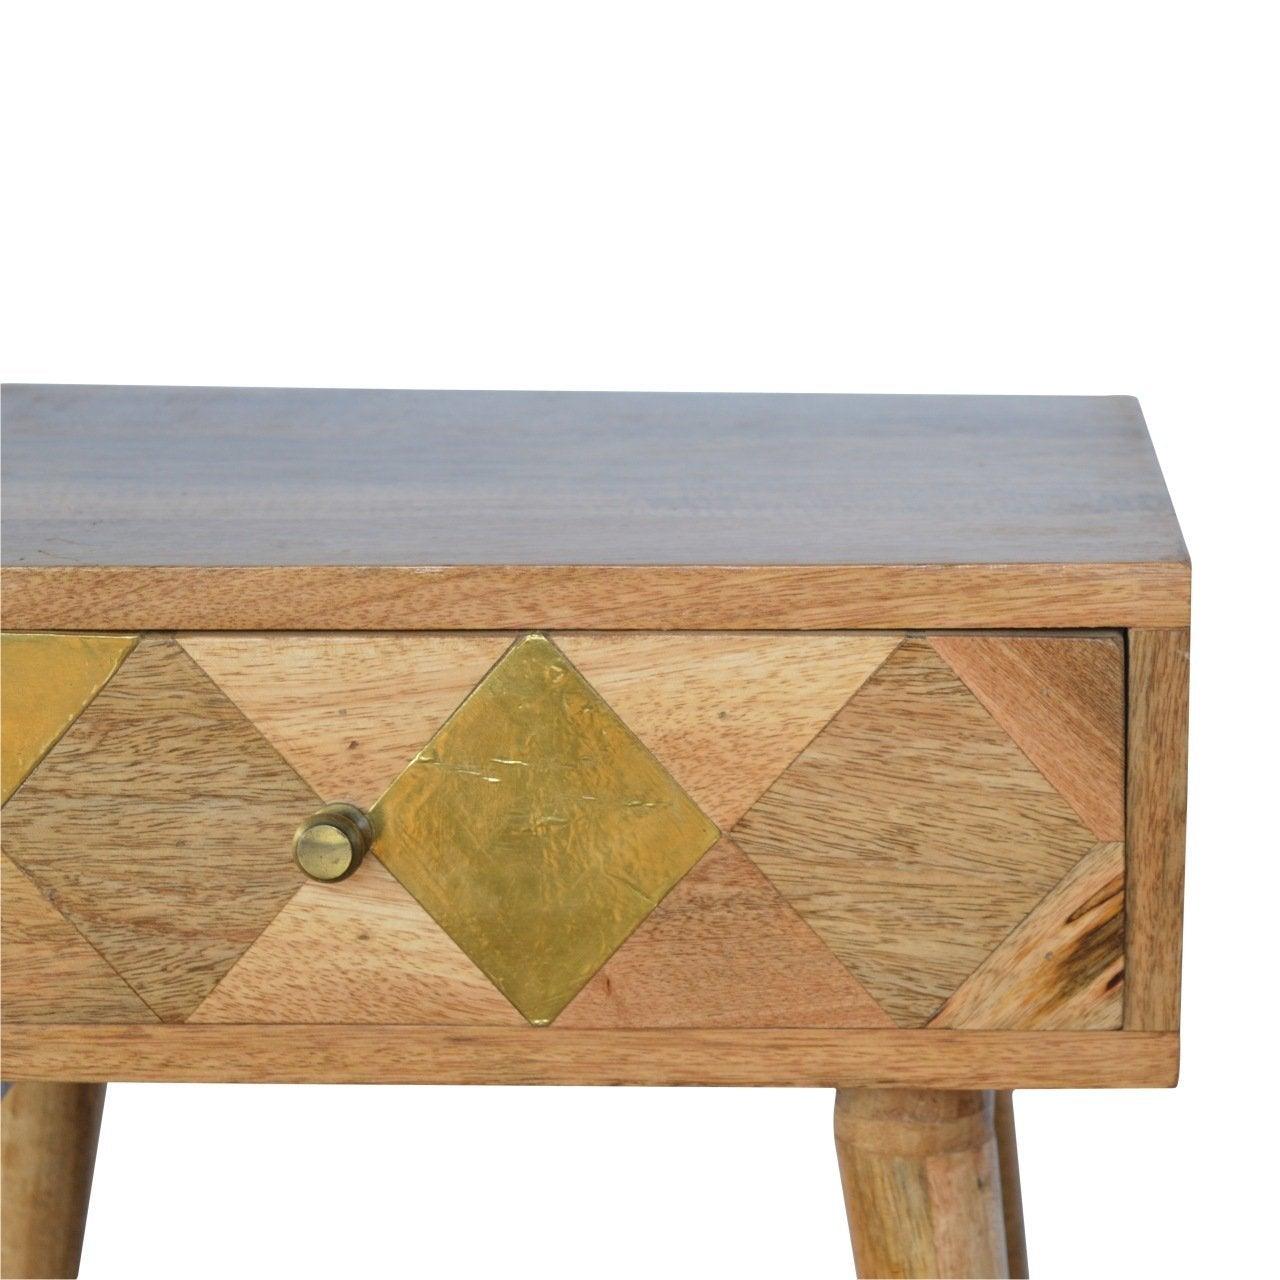 Oak-ish gold brass inlay bedside table - crimblefest furniture - image 6